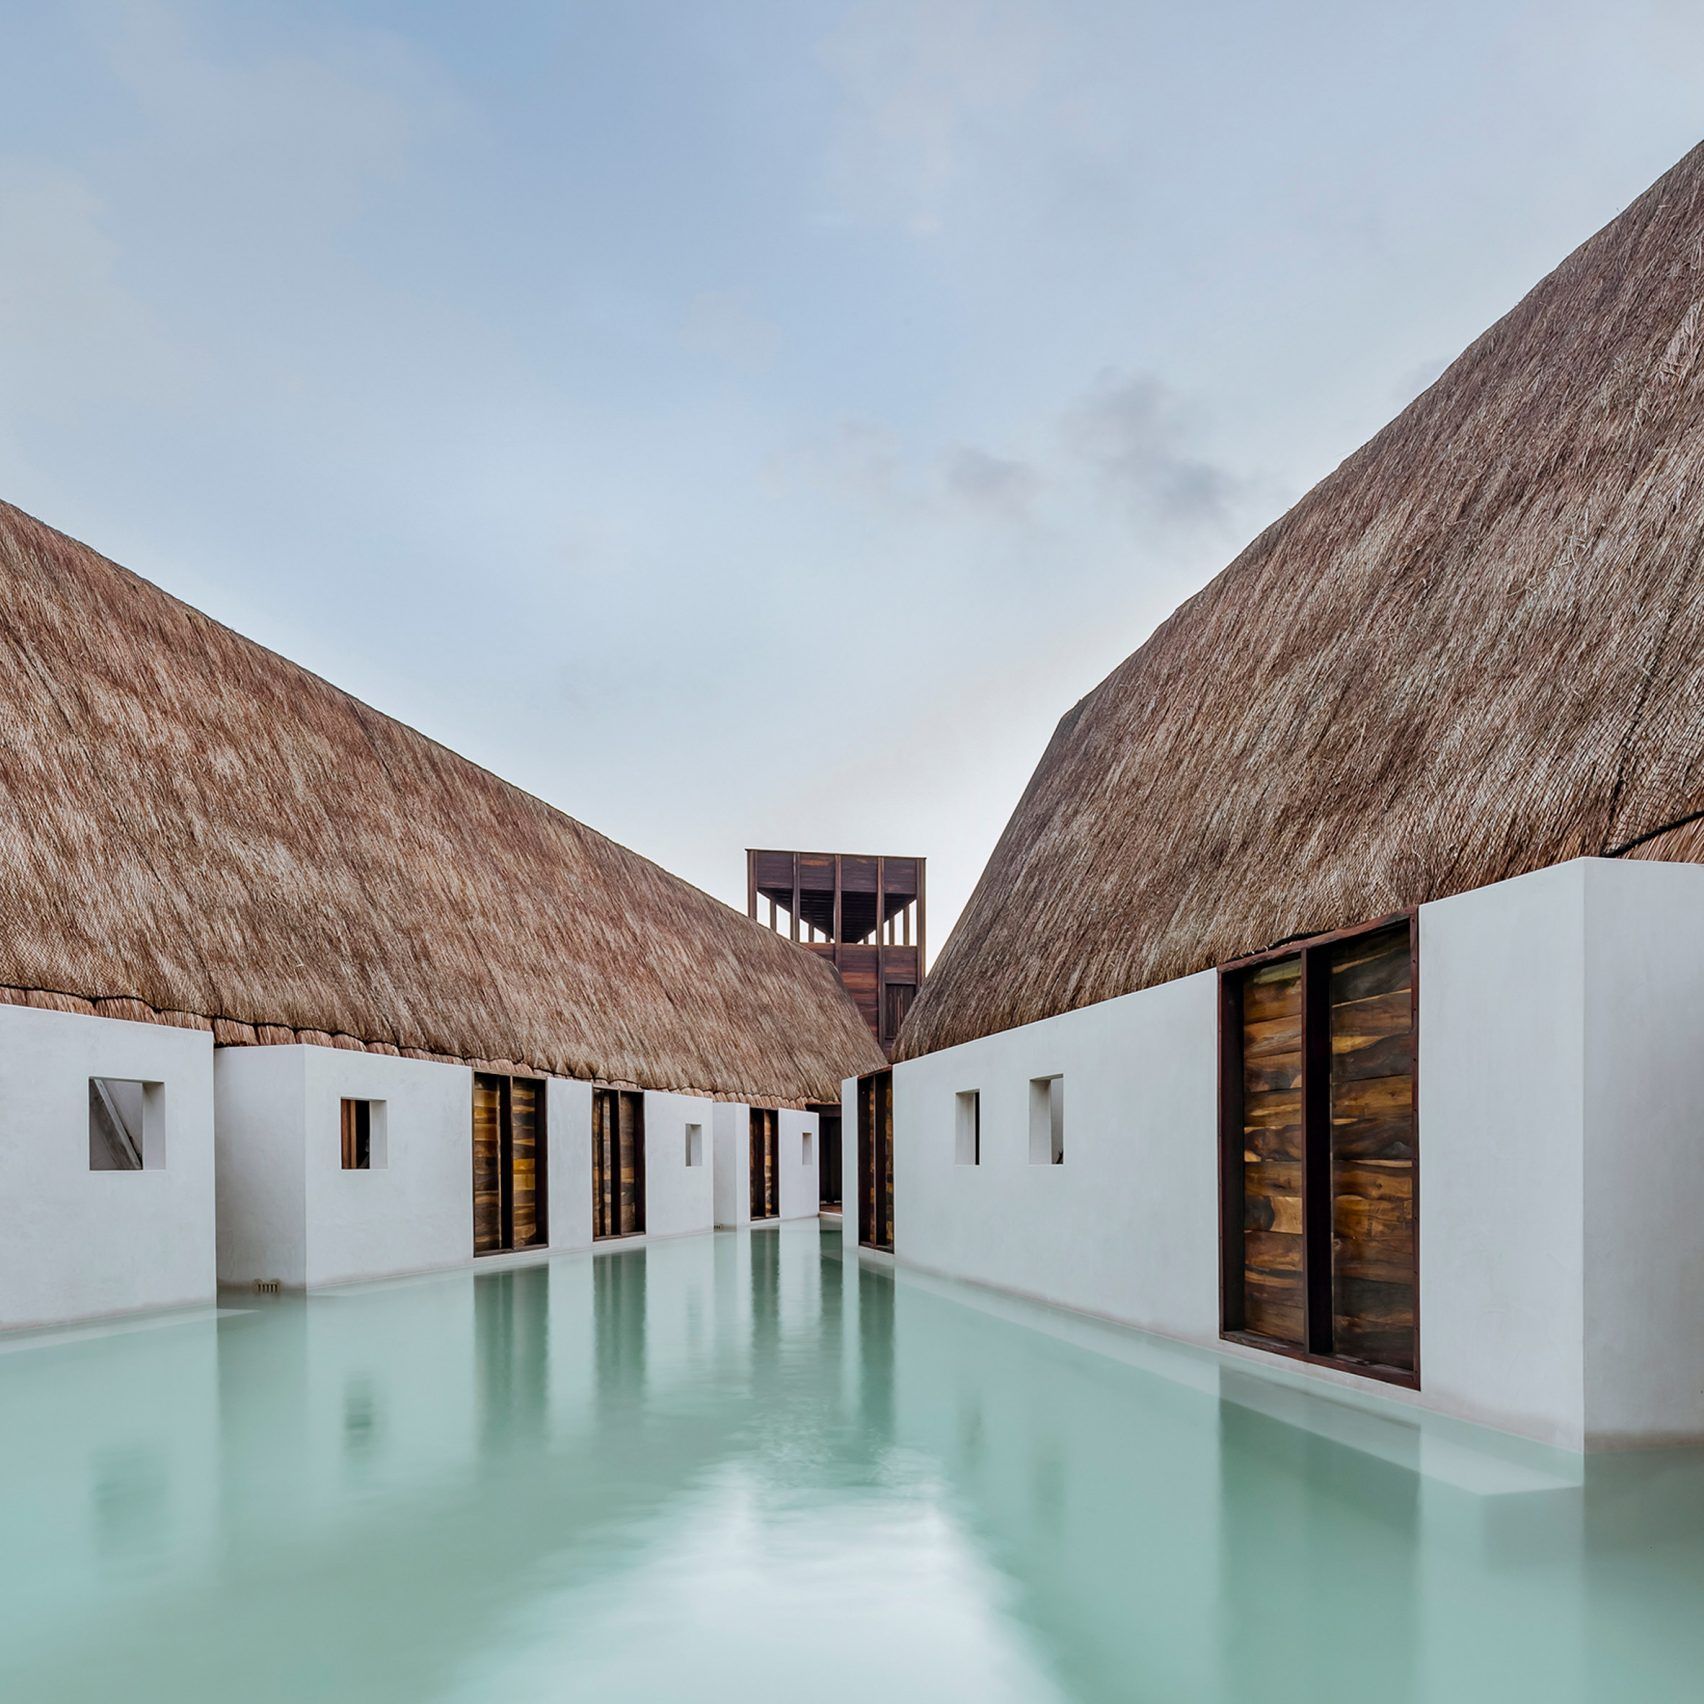 Terinspirasi oleh Arsitektur Maya, Hotel Ini Dibangun di Tempat Terpencil